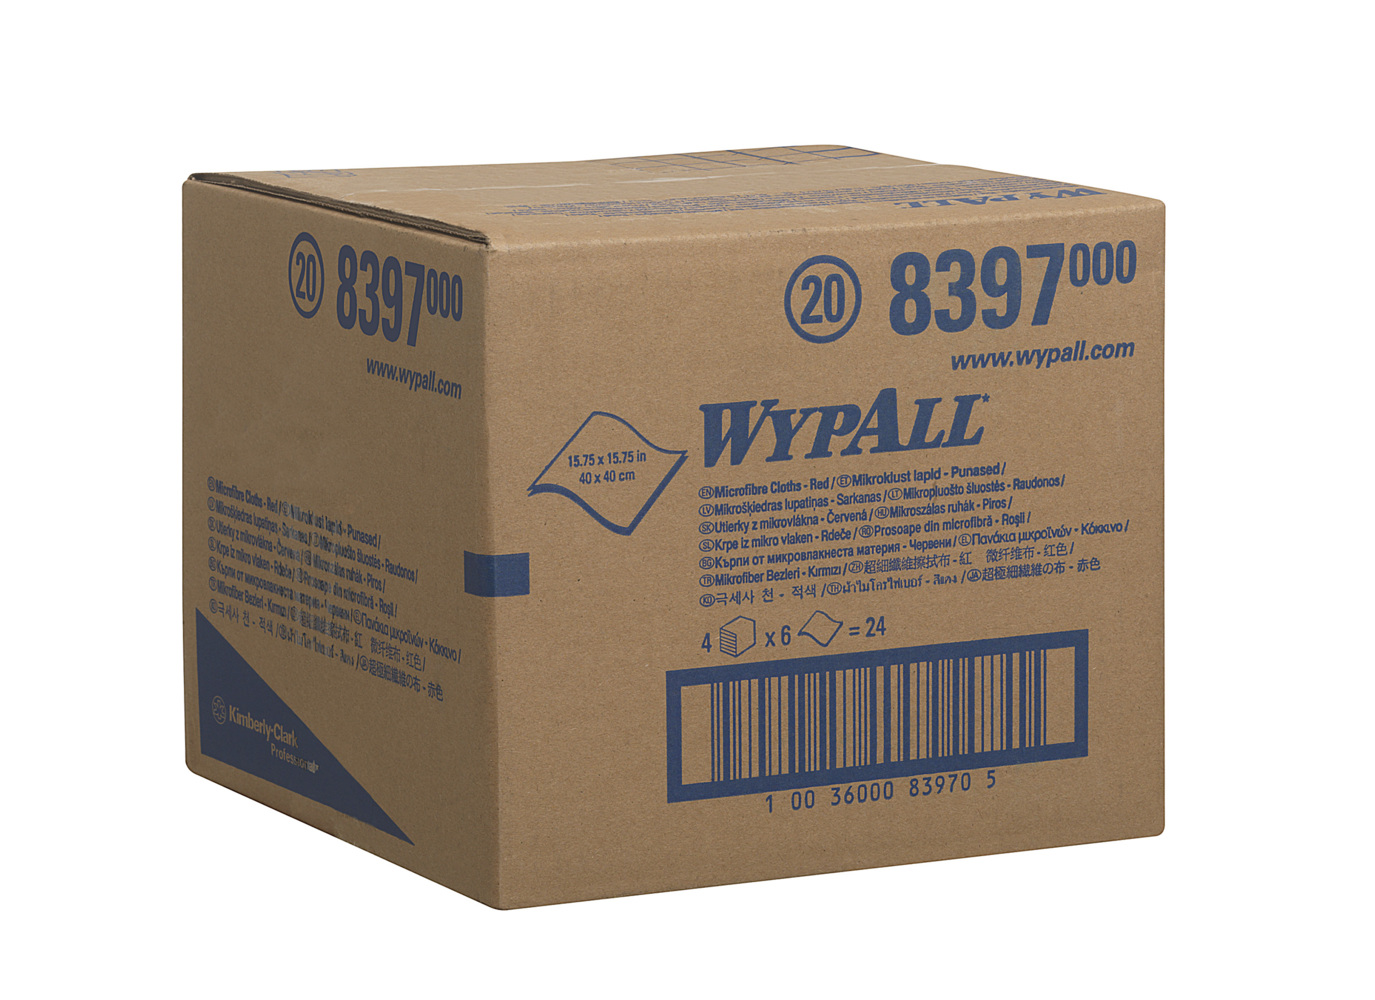 WypAll® Mikrofasertücher 8397 - 4 Päckchen mit 6 rote, 40 x 40 cm große Tücher (Gesamtanzahl 24) - 8397